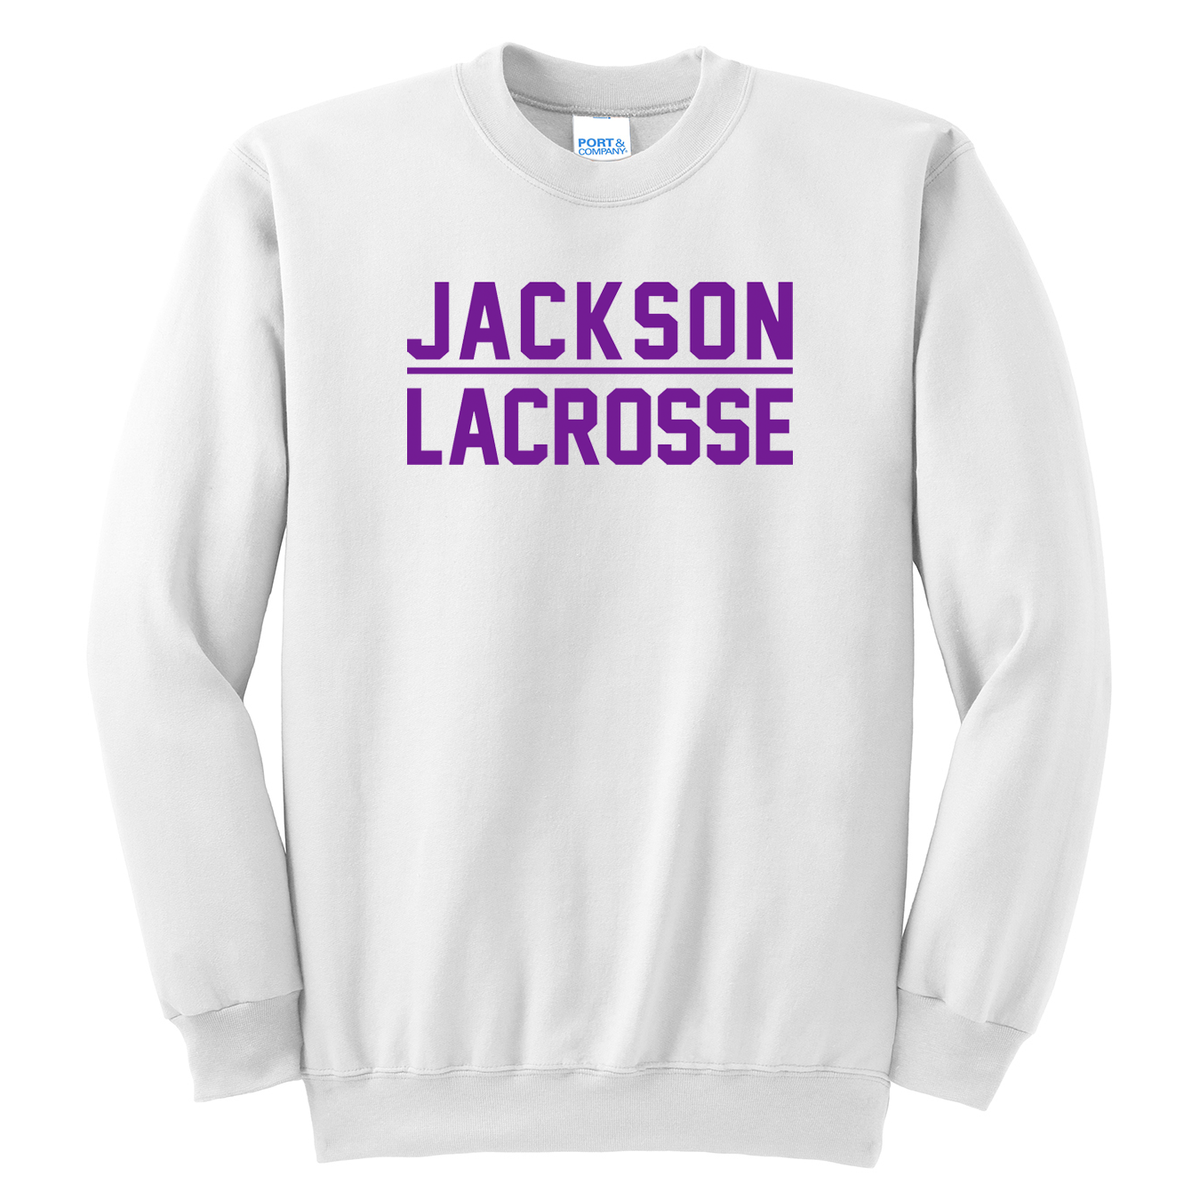 Jackson Lacrosse Crew Neck Sweater